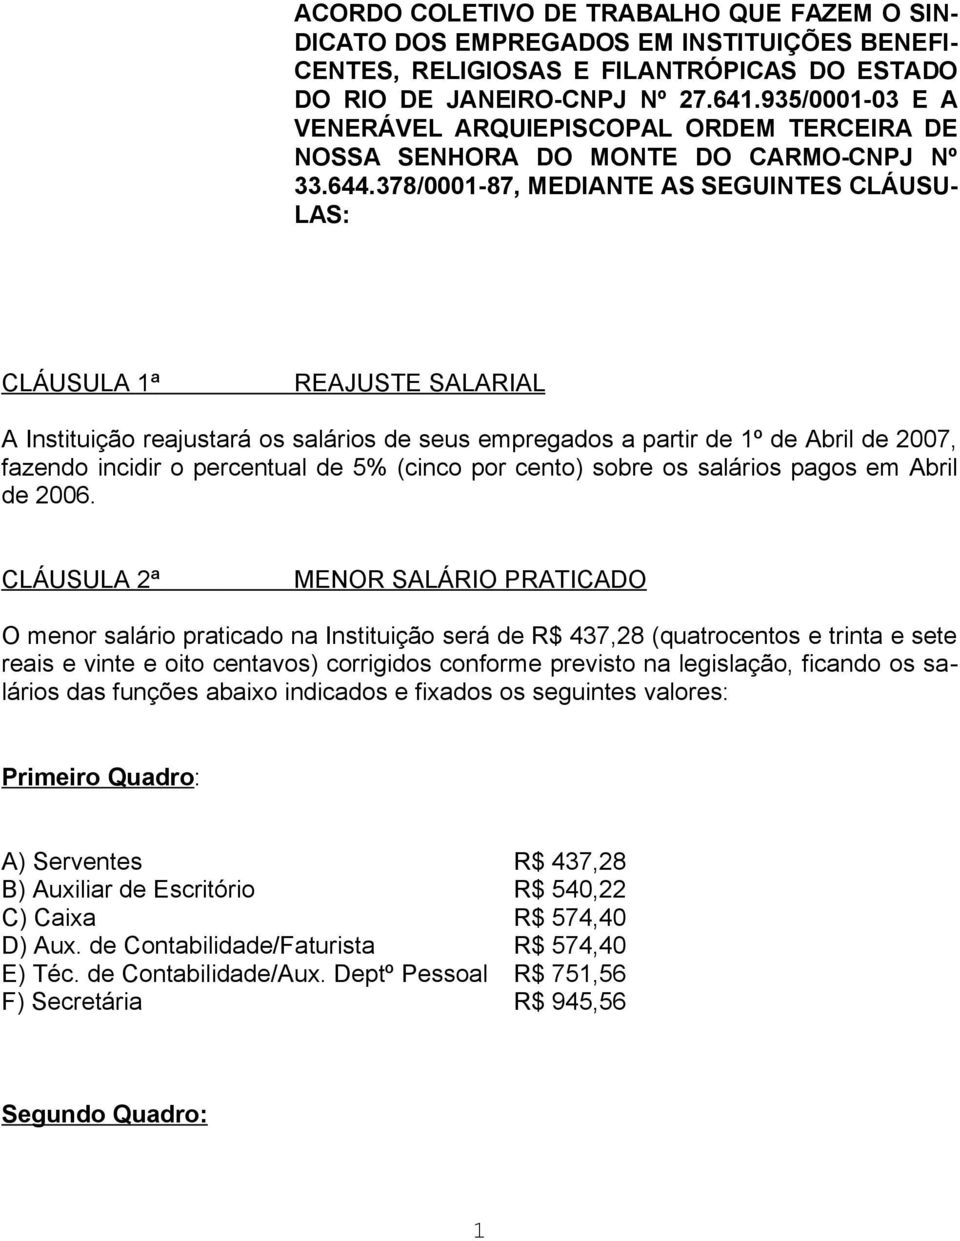 378/0001-87, MEDIANTE AS SEGUINTES CLÁUSU- LAS: CLÁUSULA 1ª REAJUSTE SALARIAL A Instituição reajustará os salários de seus empregados a partir de 1º de Abril de 2007, fazendo incidir o percentual de